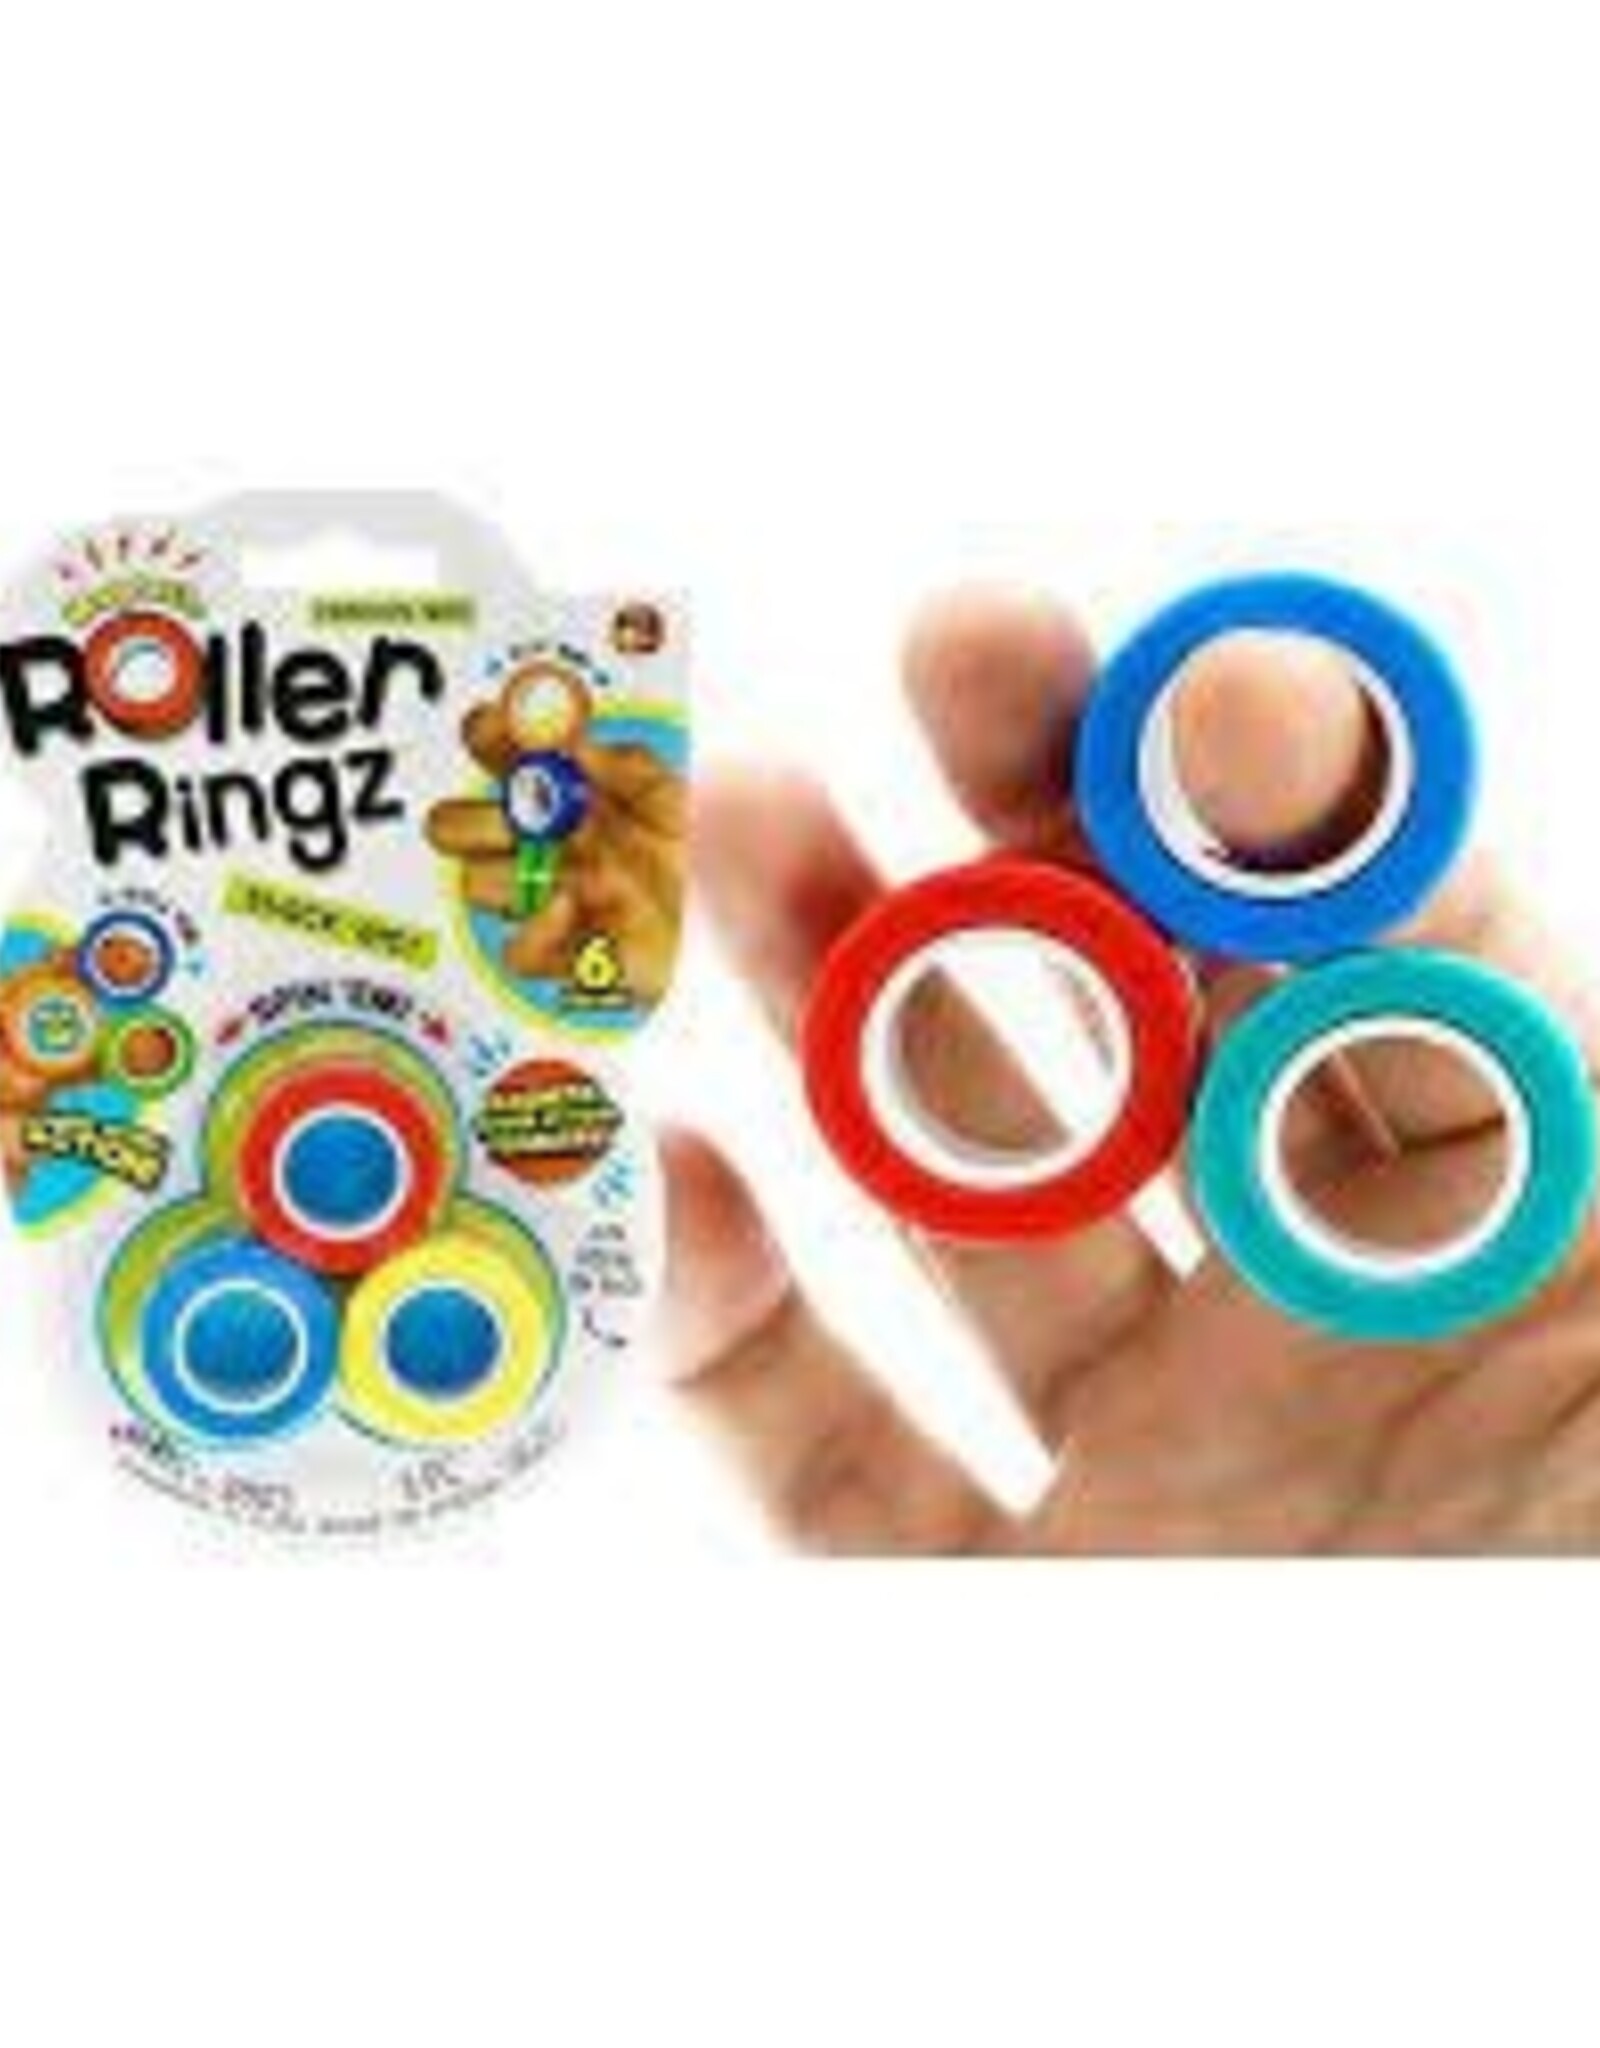 Master Toys Roller Ringz